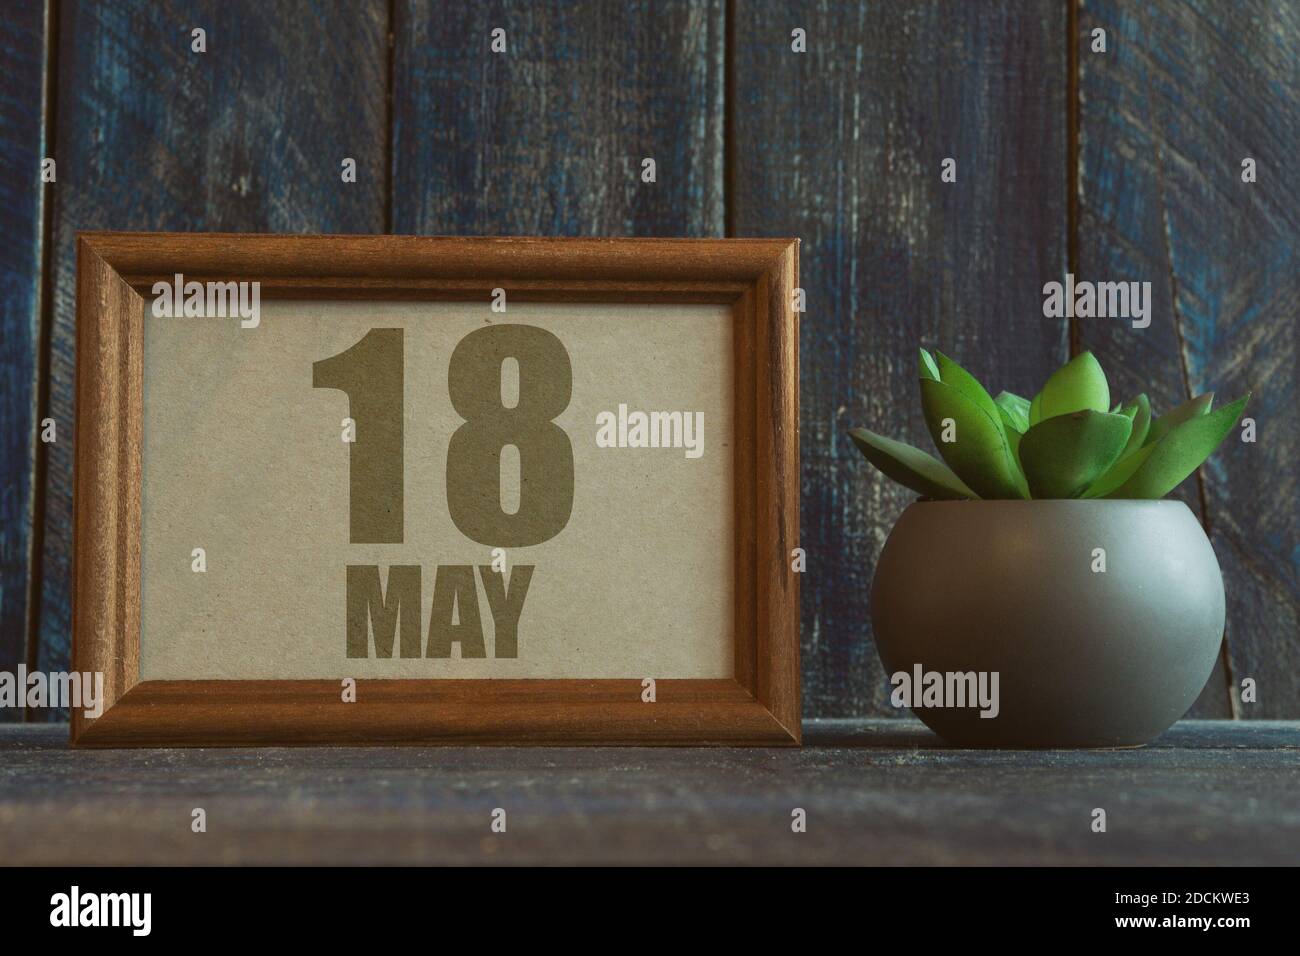 18 mai. Jour 18 du mois, date dans le cadre à côté de succulent sur fond de bois printemps mois, jour de l'année concept Banque D'Images